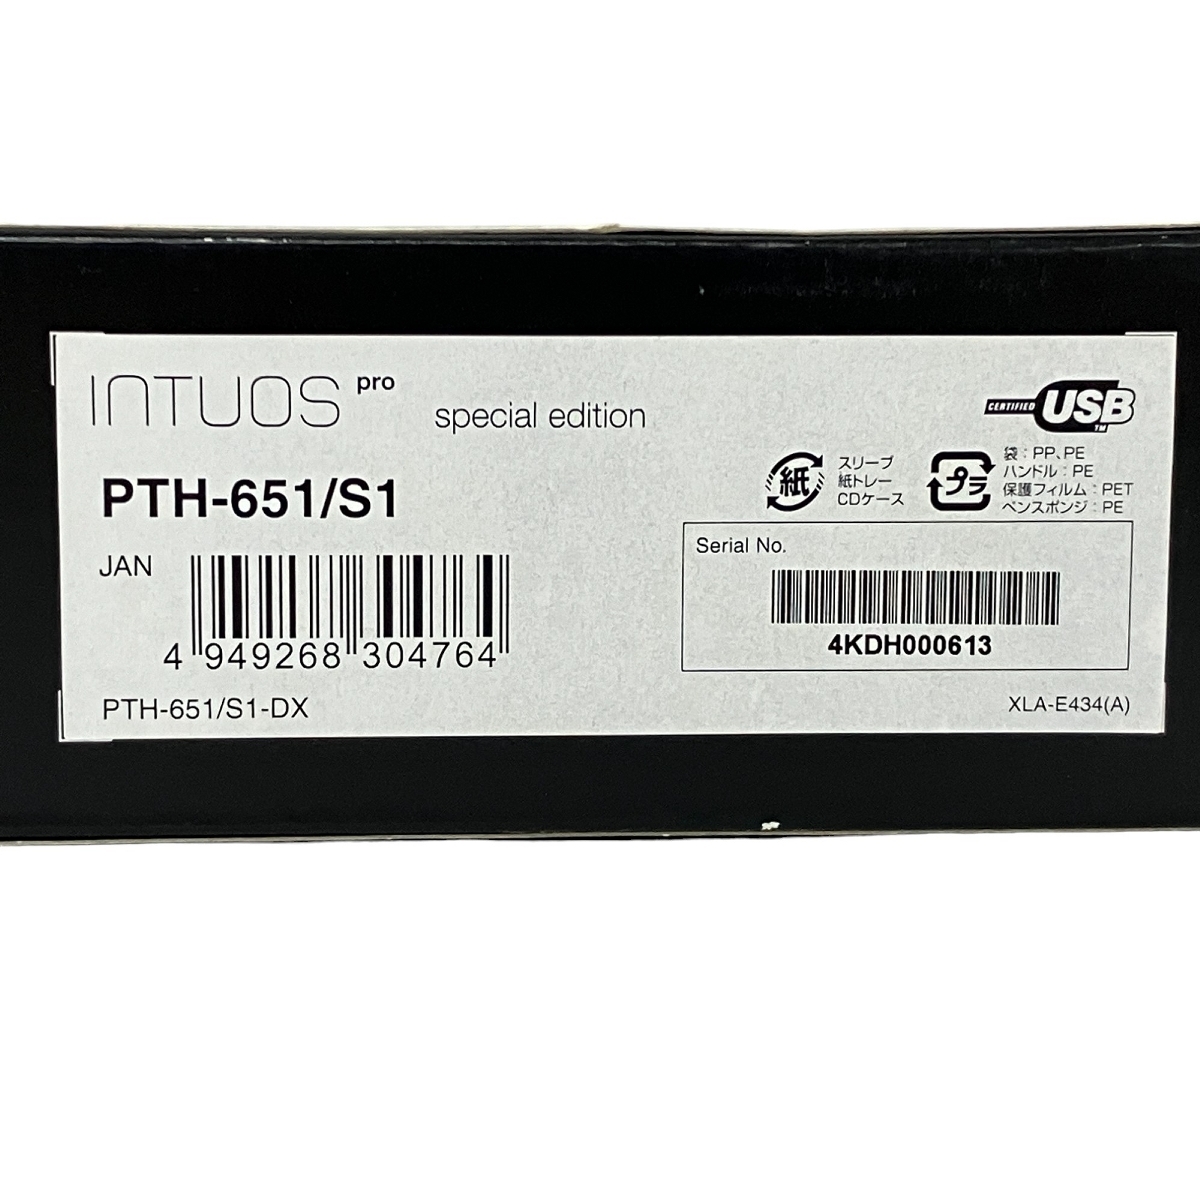 [ гарантия работы ] Wacom INTUOS pro Special Edition PTH-651 авторучка планшет не использовался S8857943